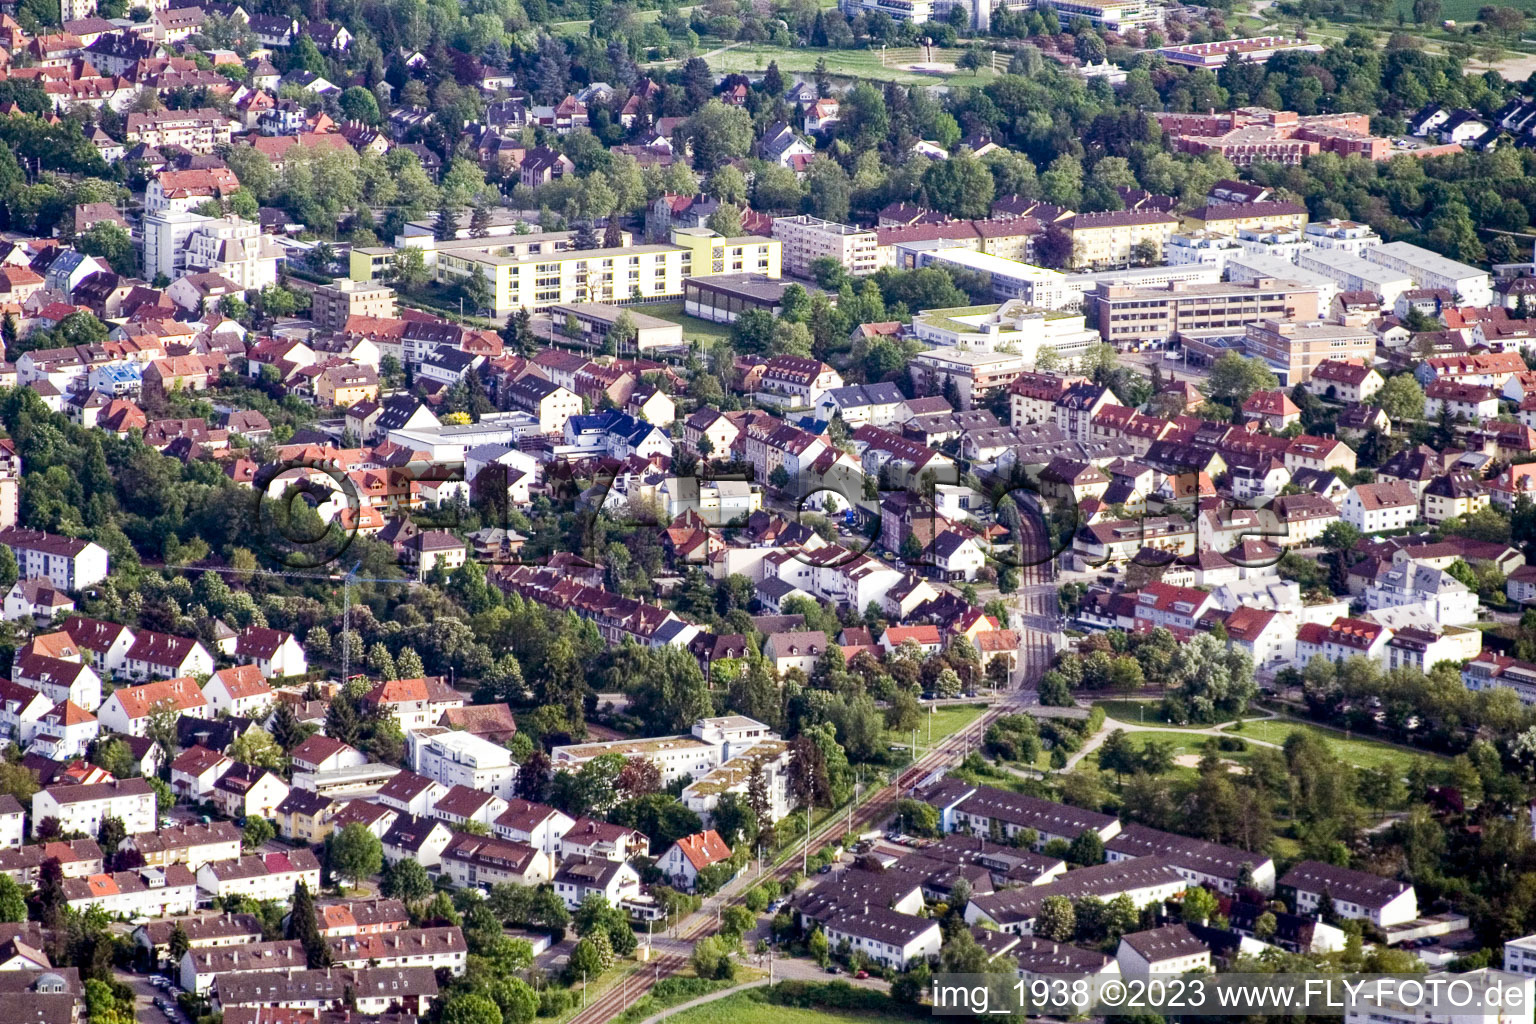 Ettlingen im Bundesland Baden-Württemberg, Deutschland aus der Drohnenperspektive